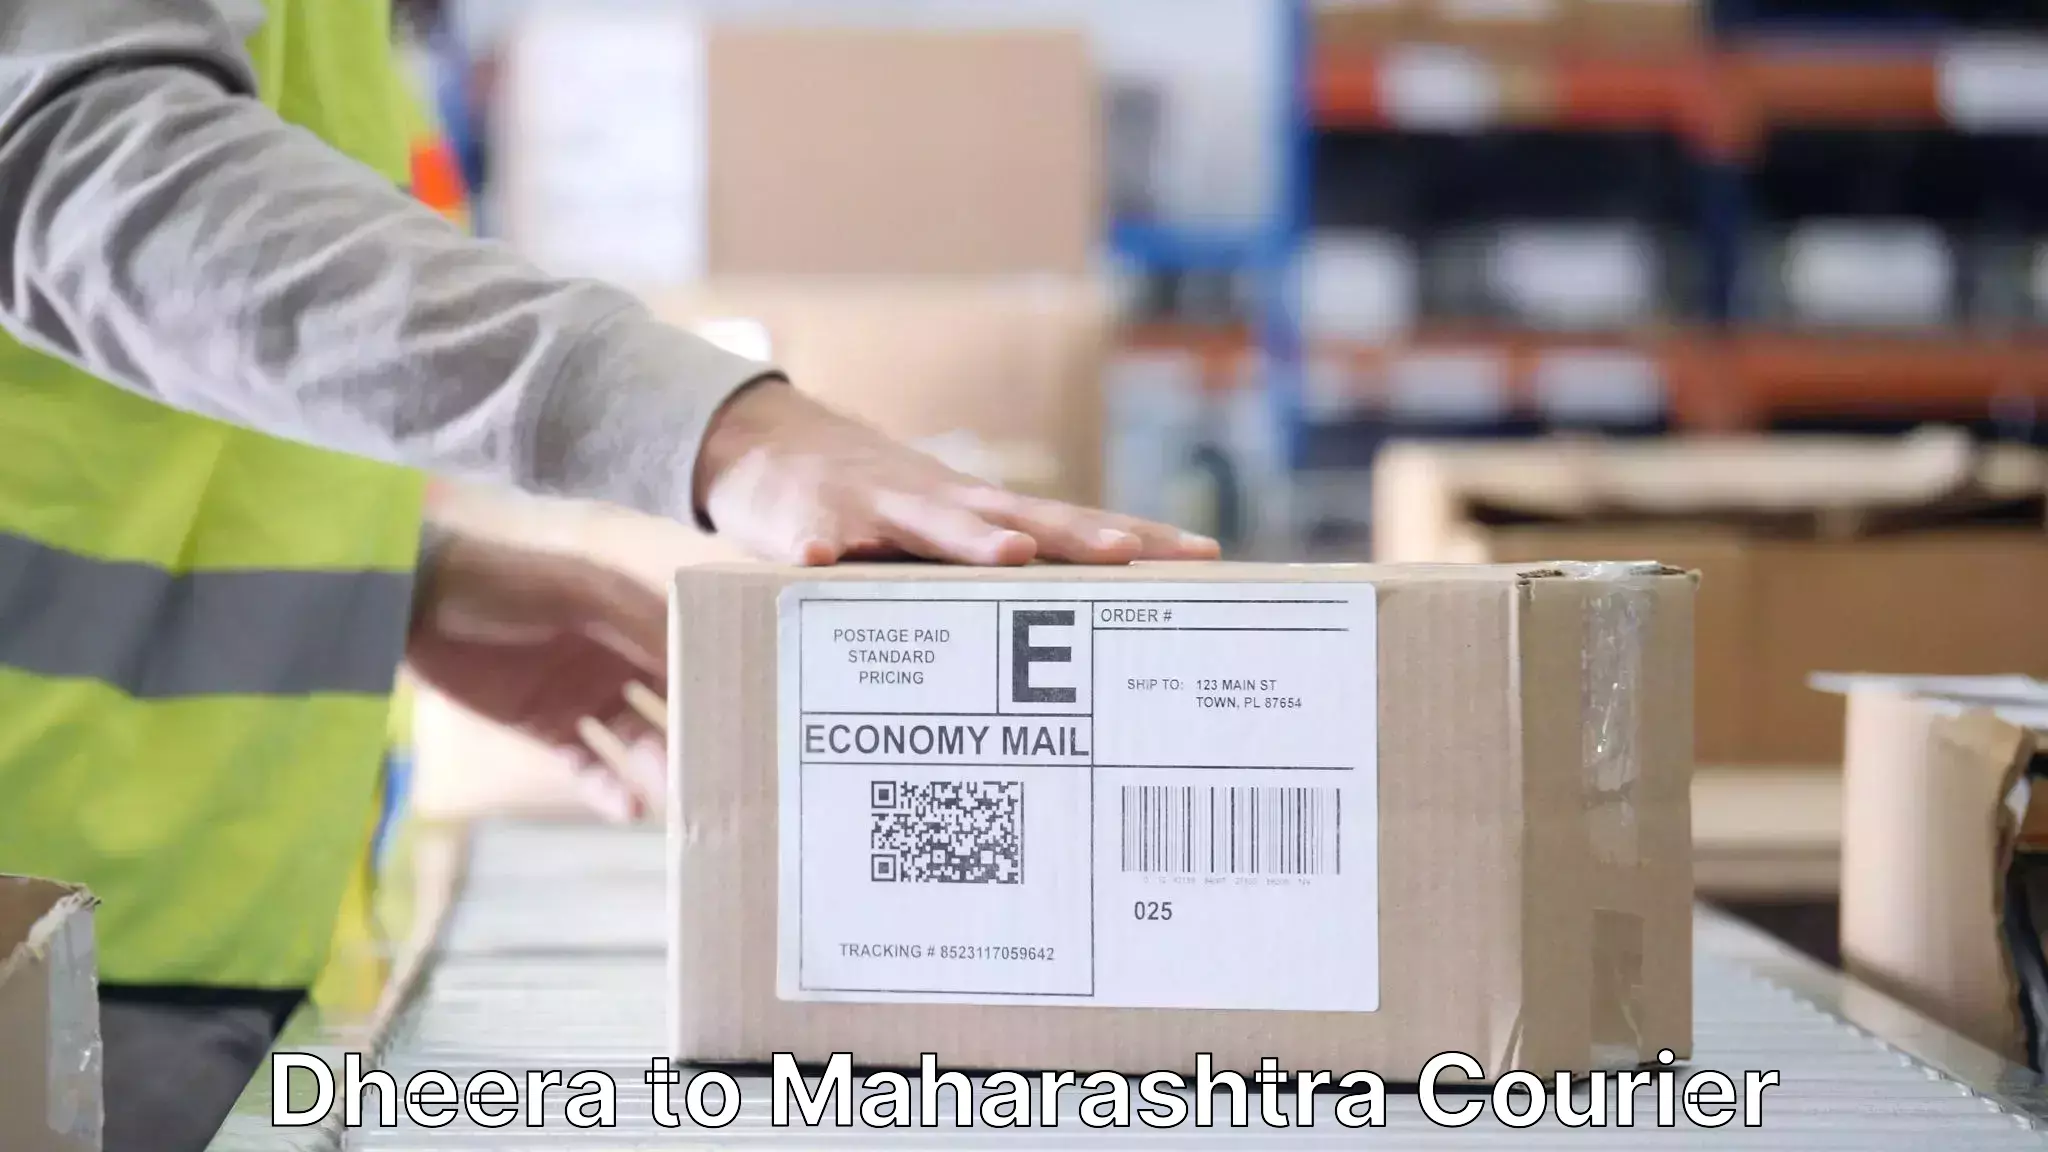 Expert goods movers Dheera to Maharashtra